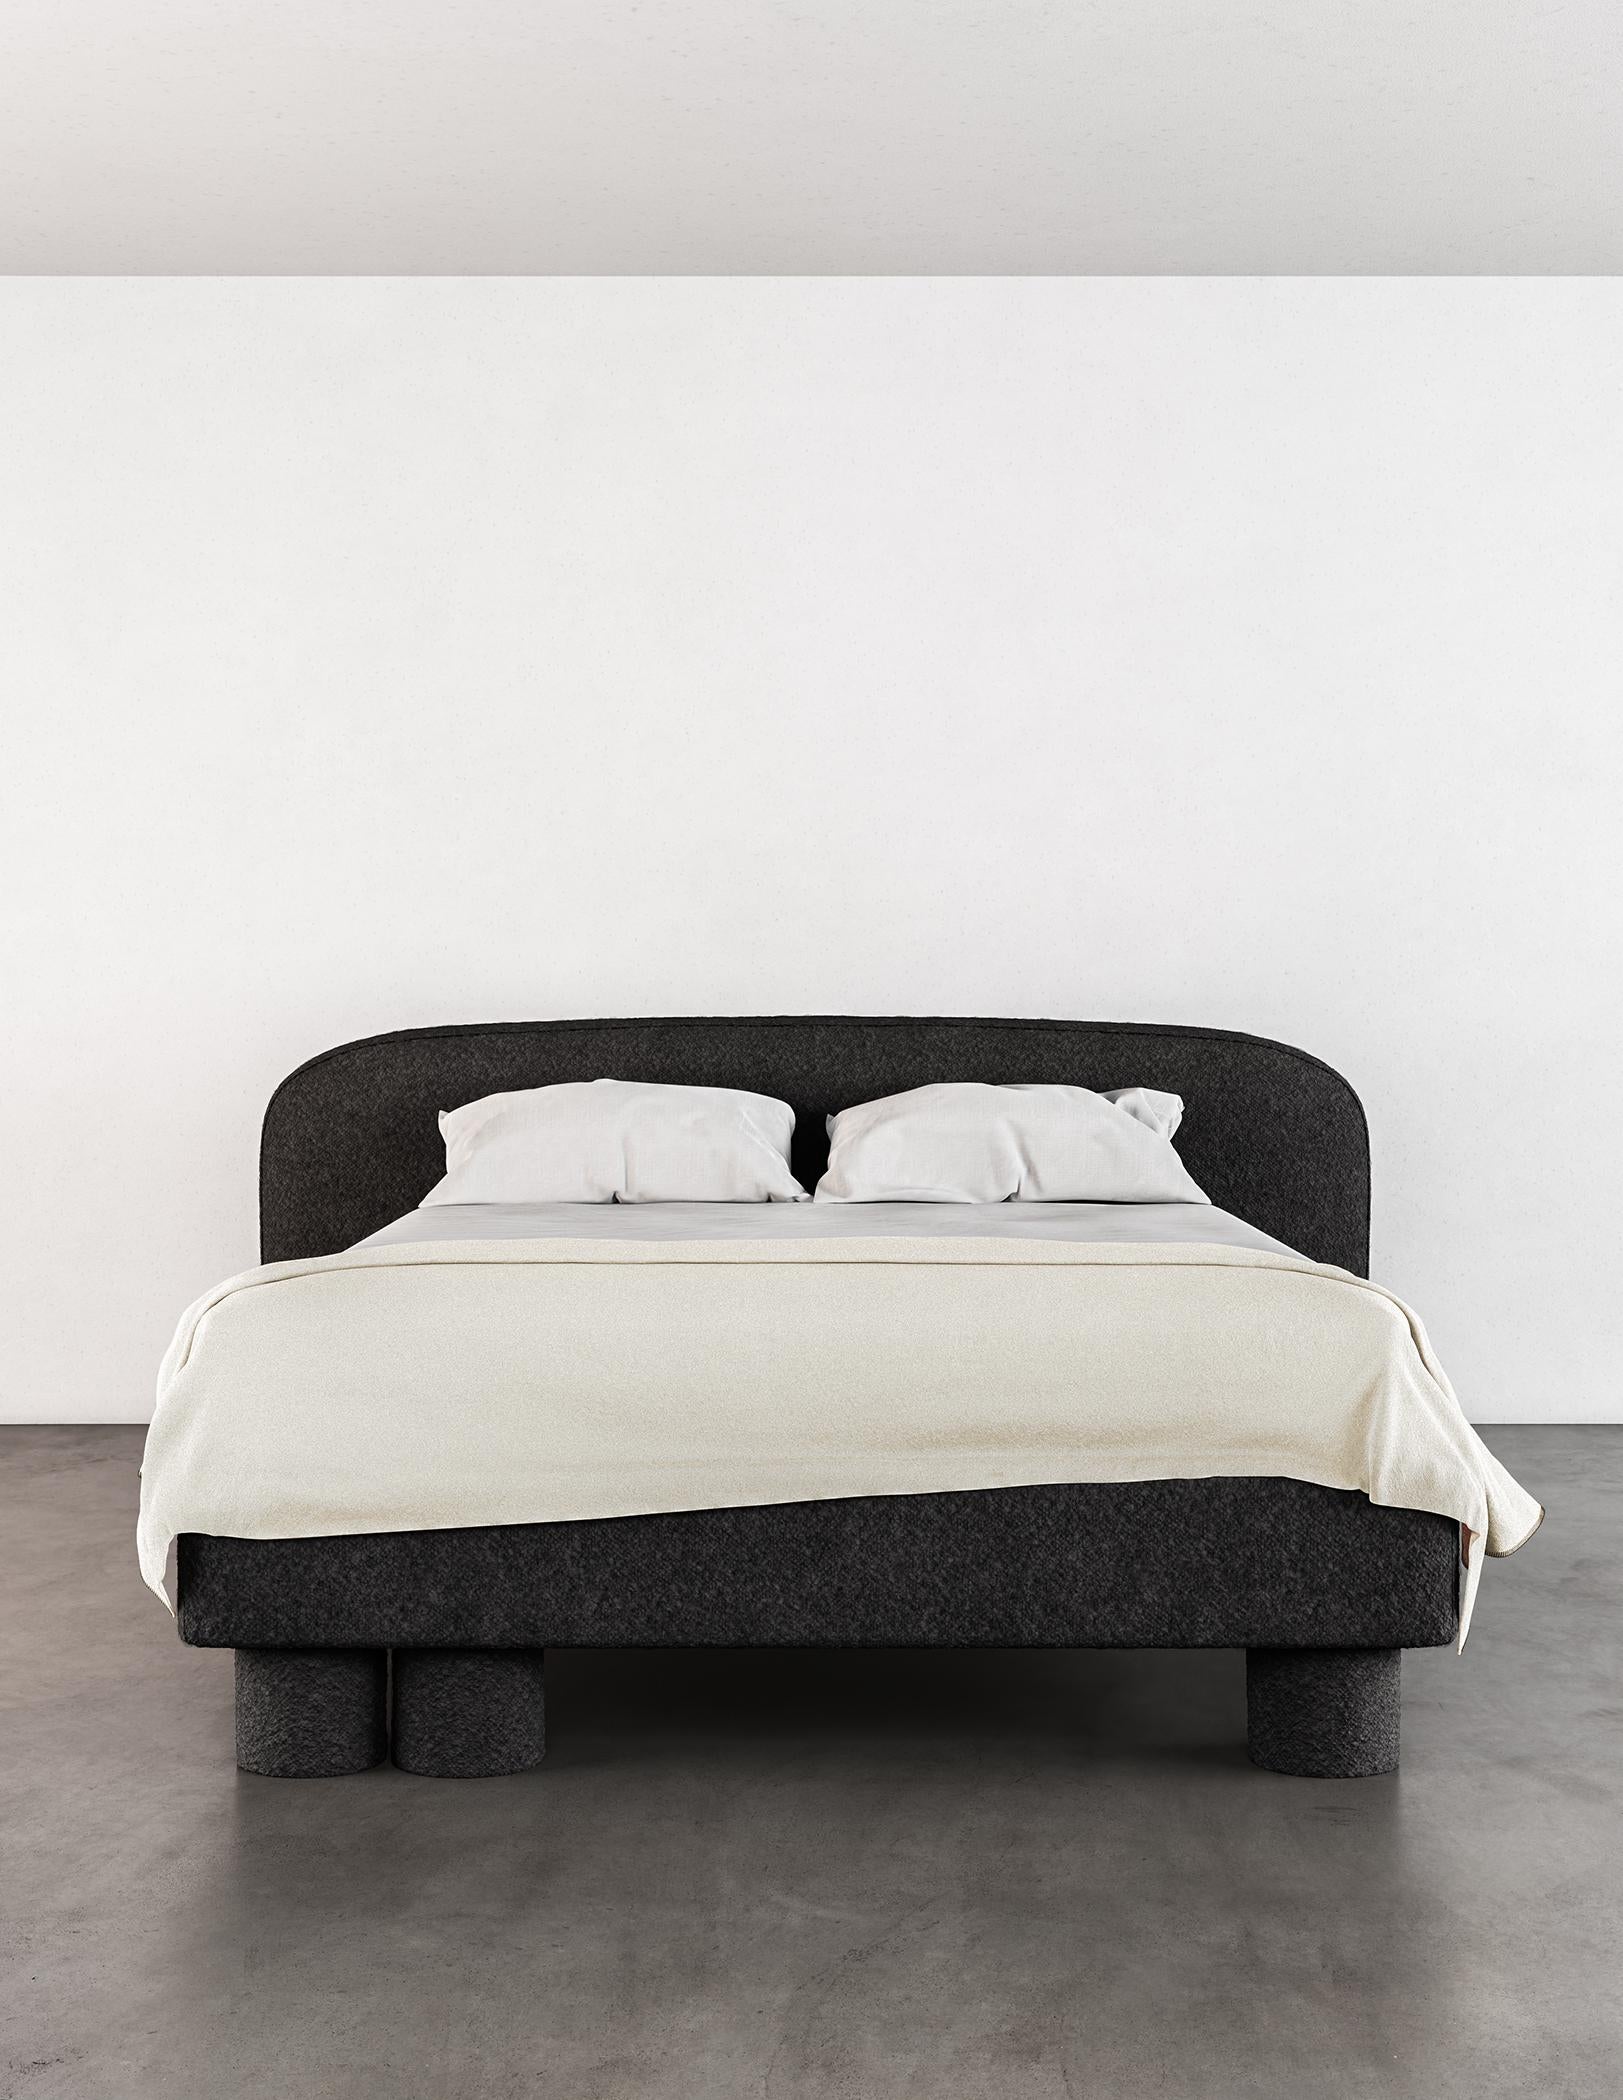 Das Pillar Bed ist ein atemberaubendes Möbelstück, das durch sein einzigartiges und fesselndes Design besticht. Es zeichnet sich durch mehrschichtige, asymmetrische Designelemente aus, die ein Gefühl von Raffinesse und Schlichtheit vermitteln. Die